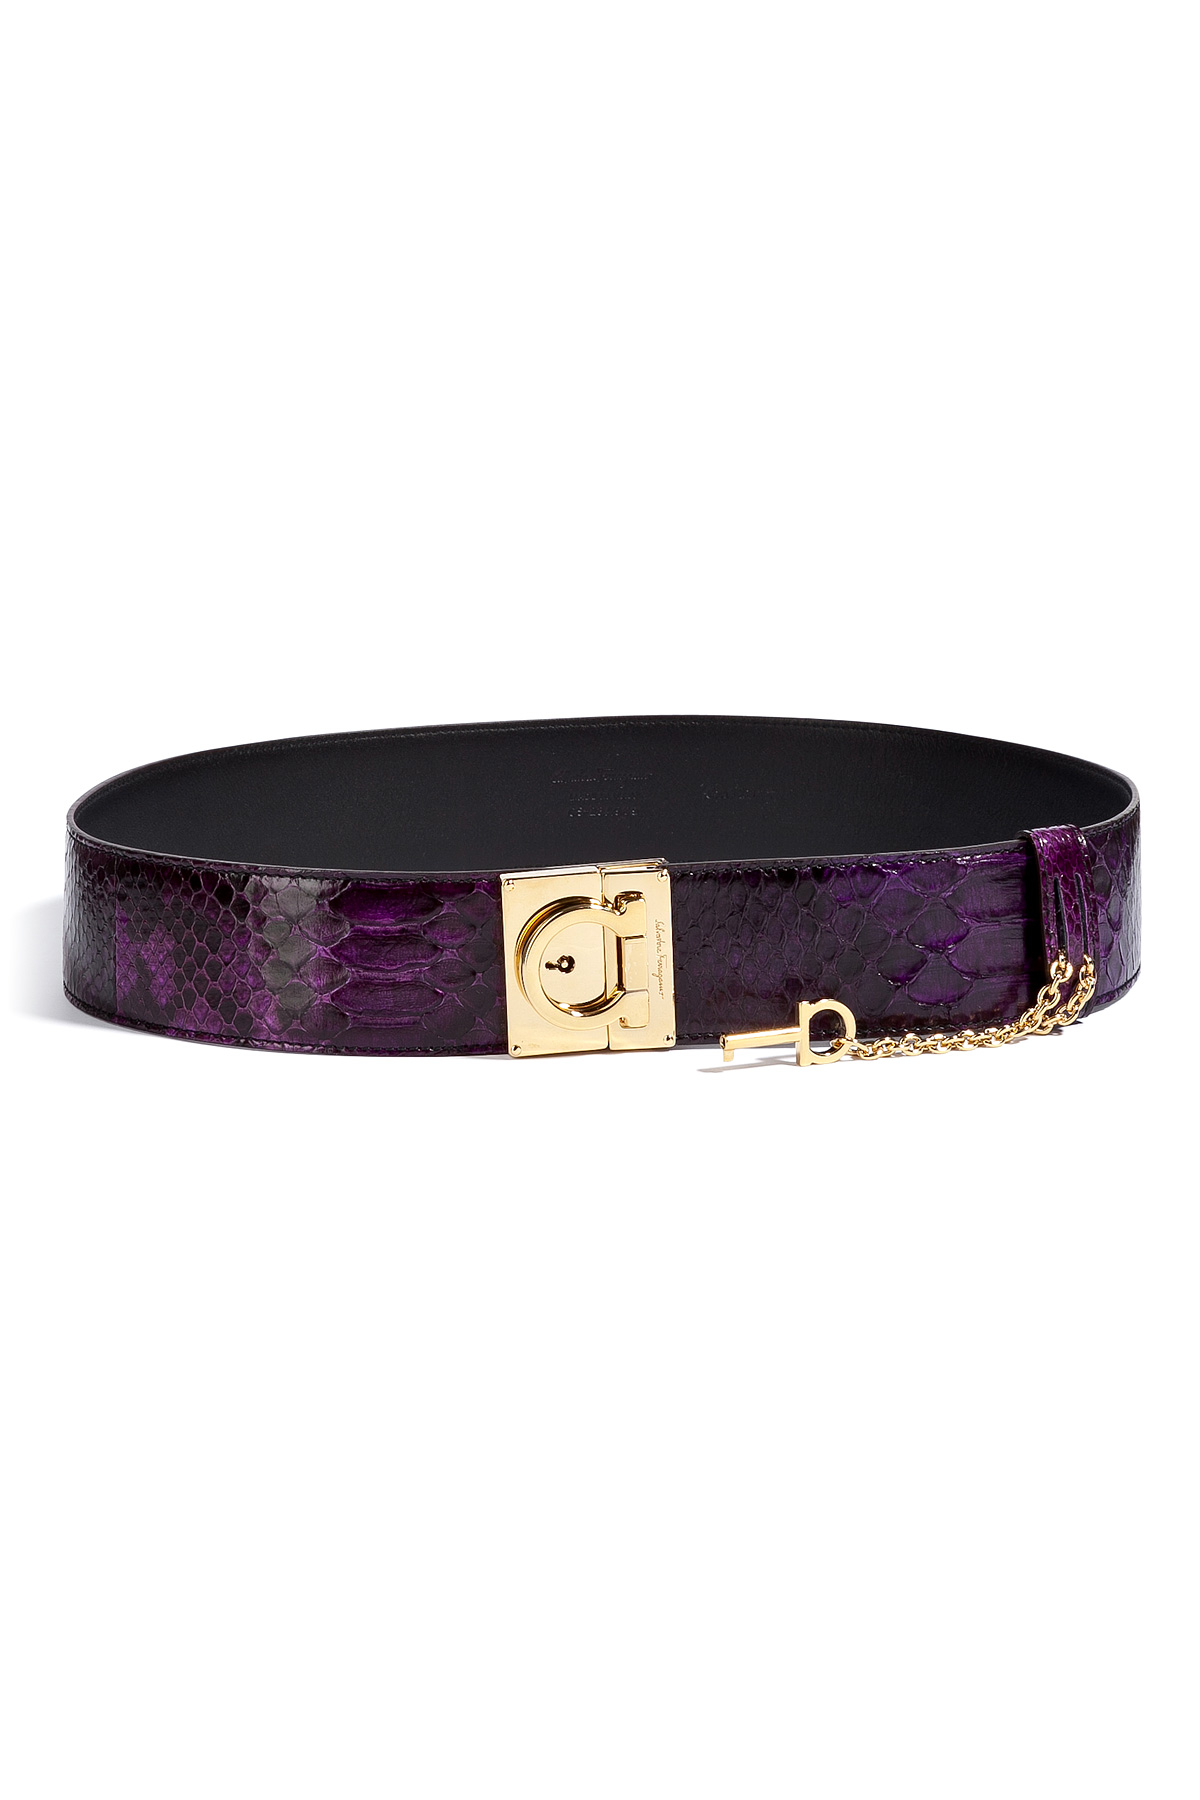 Ferragamo Purple Python Belt in Purple | Lyst  